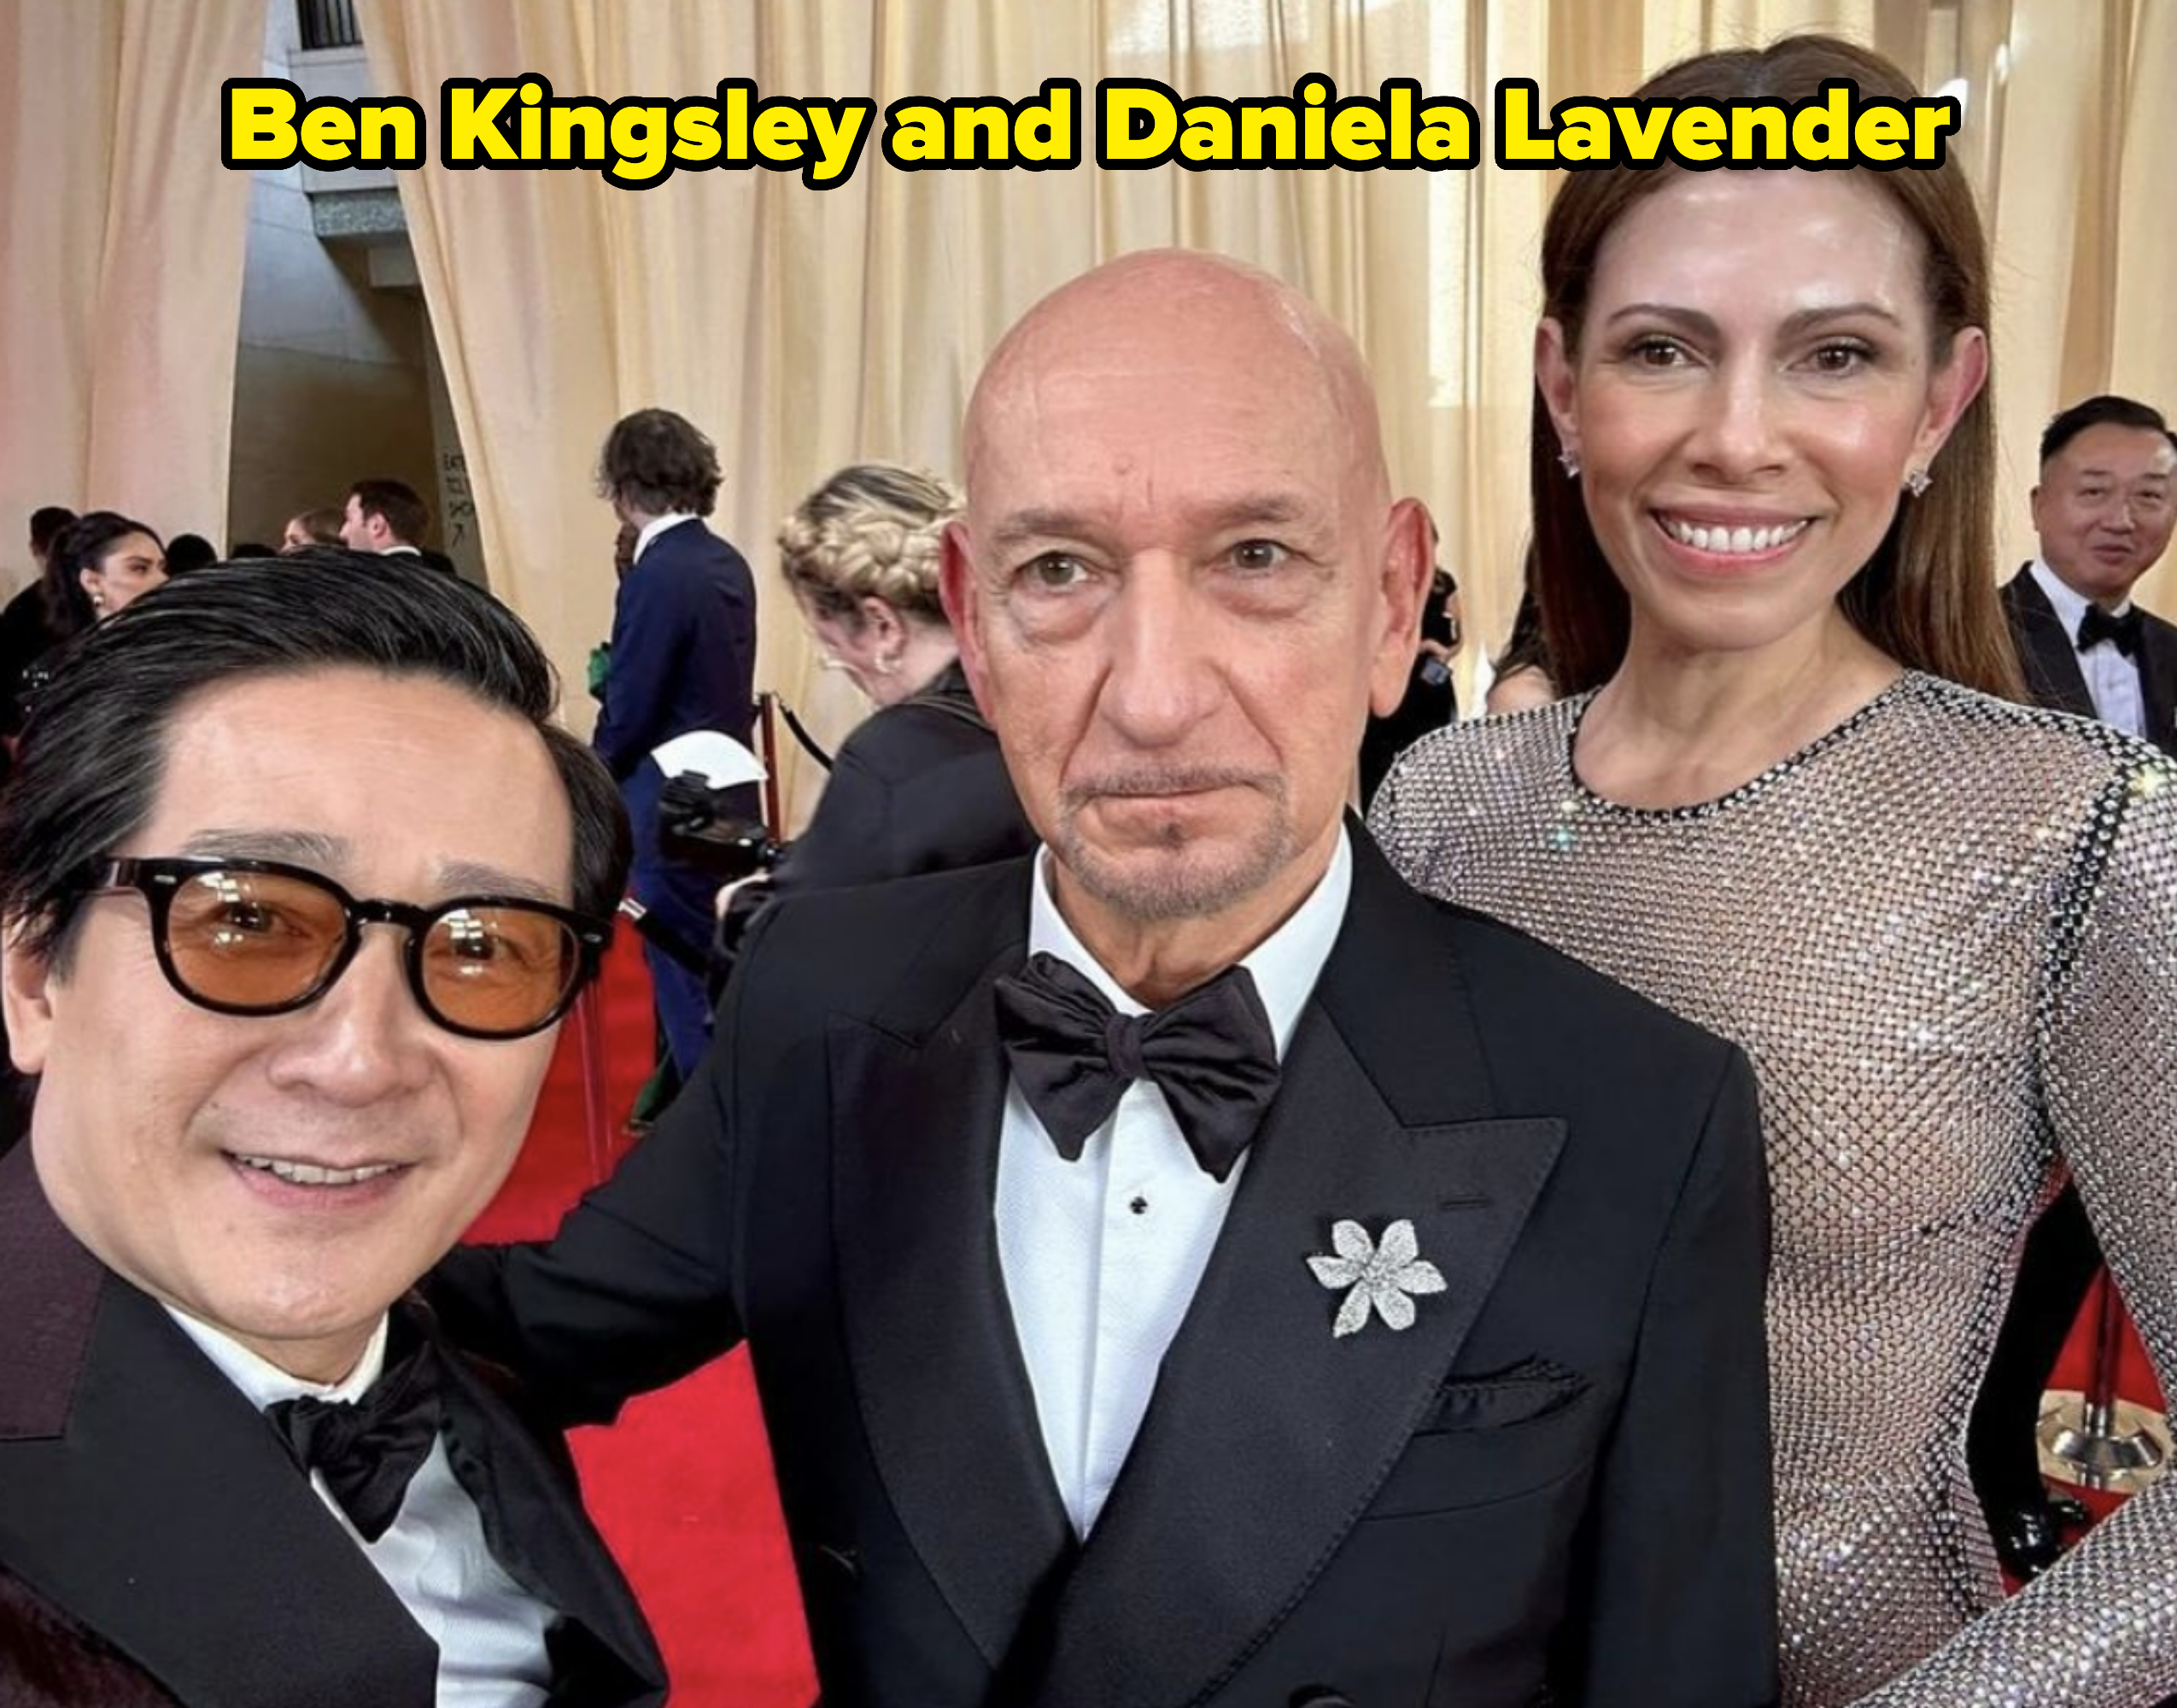 Ben Kingsley and Daniela Lavender with Ke Huy Quan